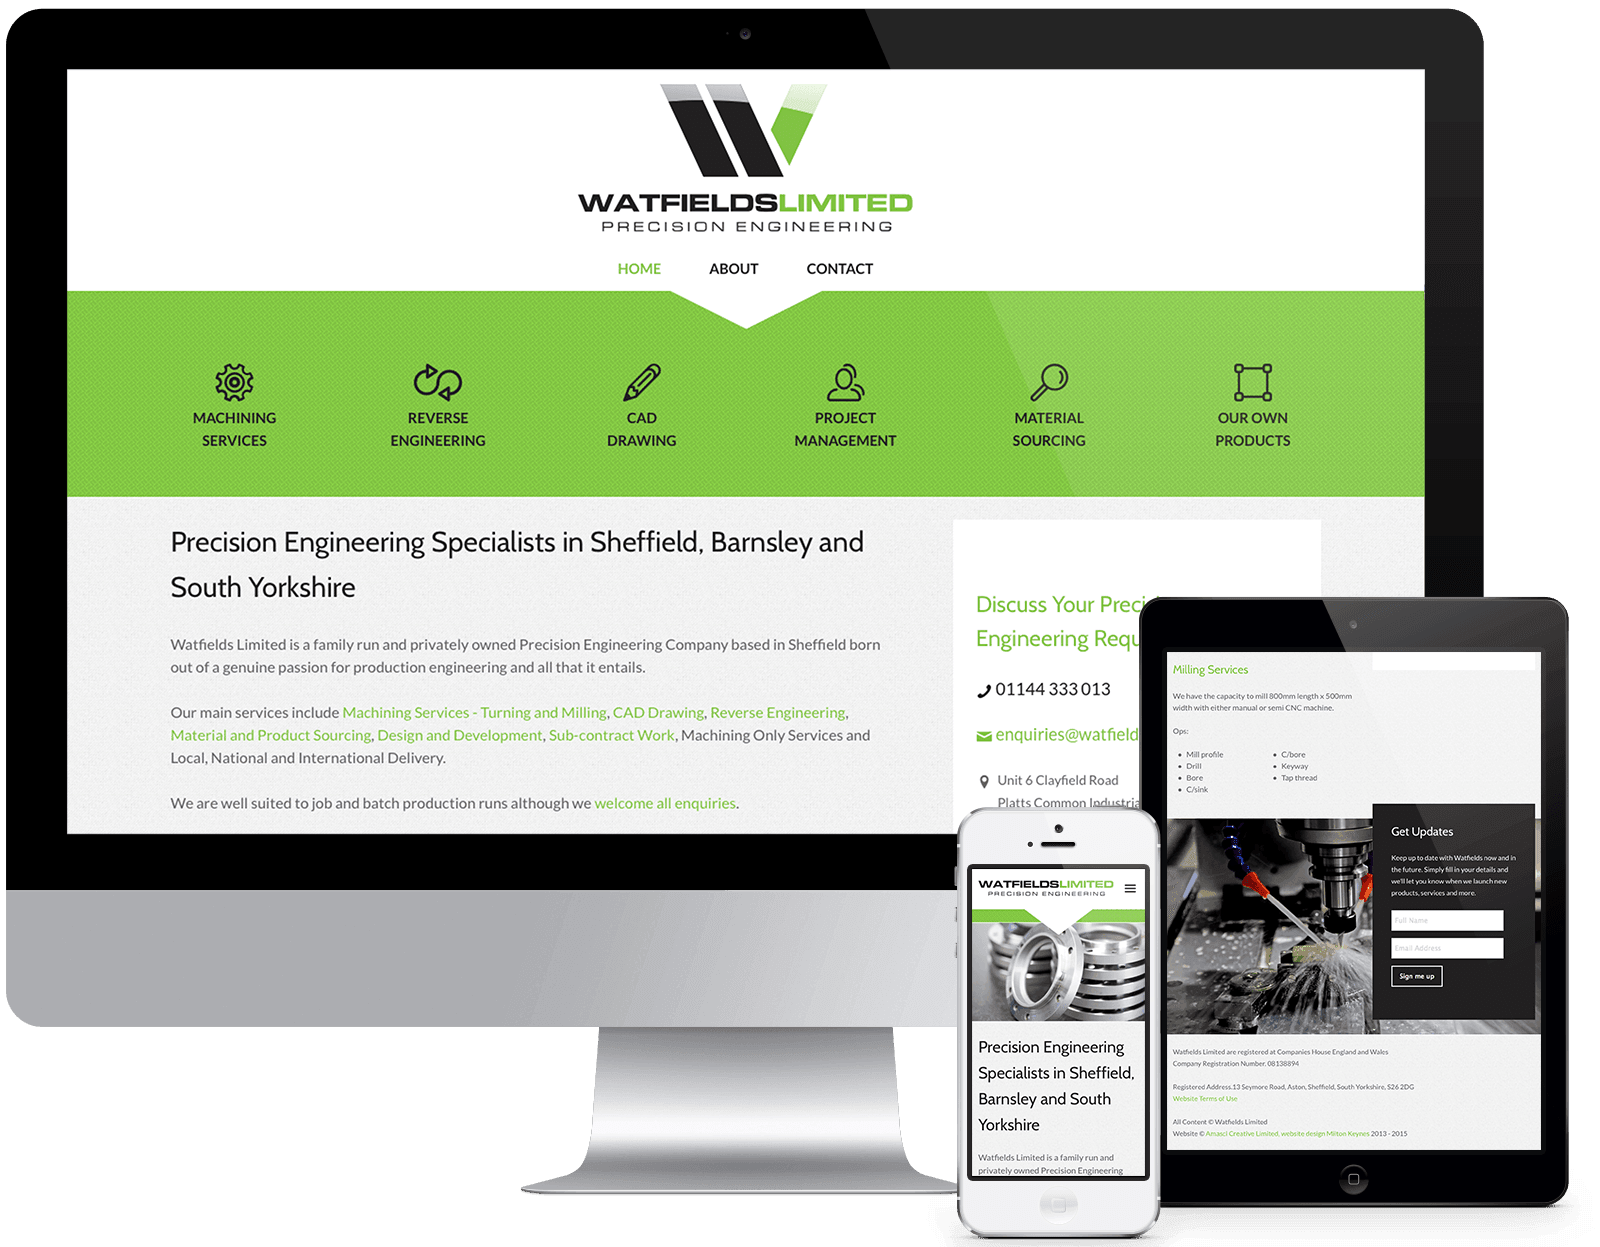 Watfields - Visit the Website